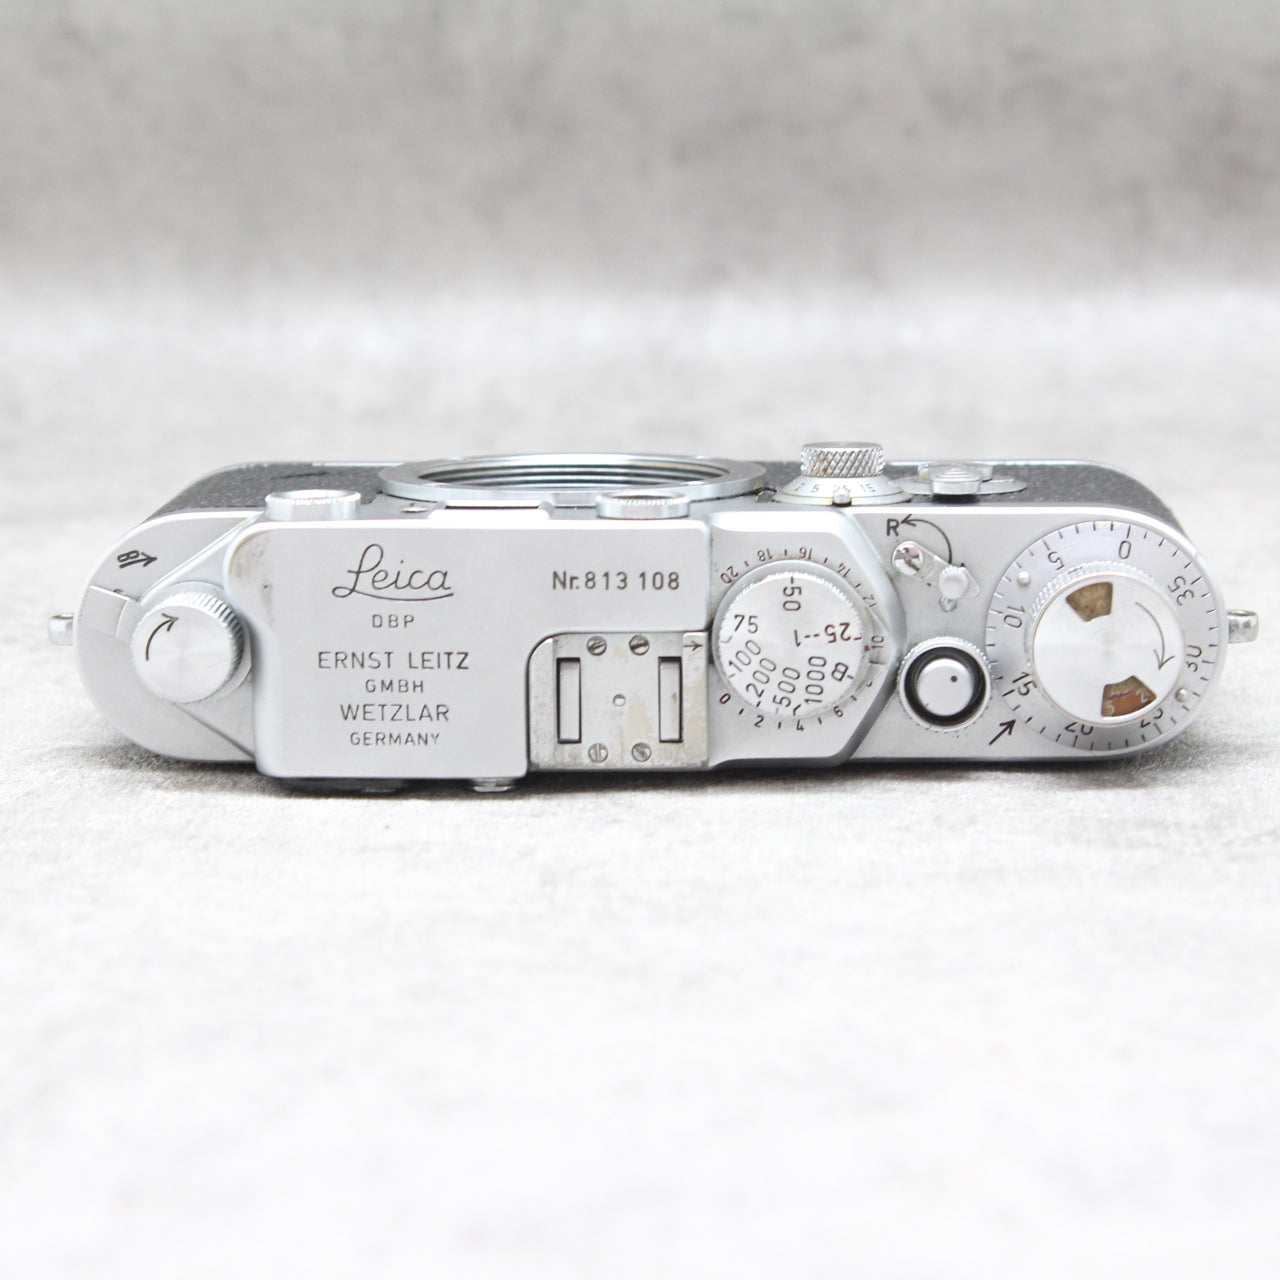 中古品 Leica IIIf ブラックシンクロ セルフタイマーモデル 【9月6日(火)のYouTube生配信でご紹介】